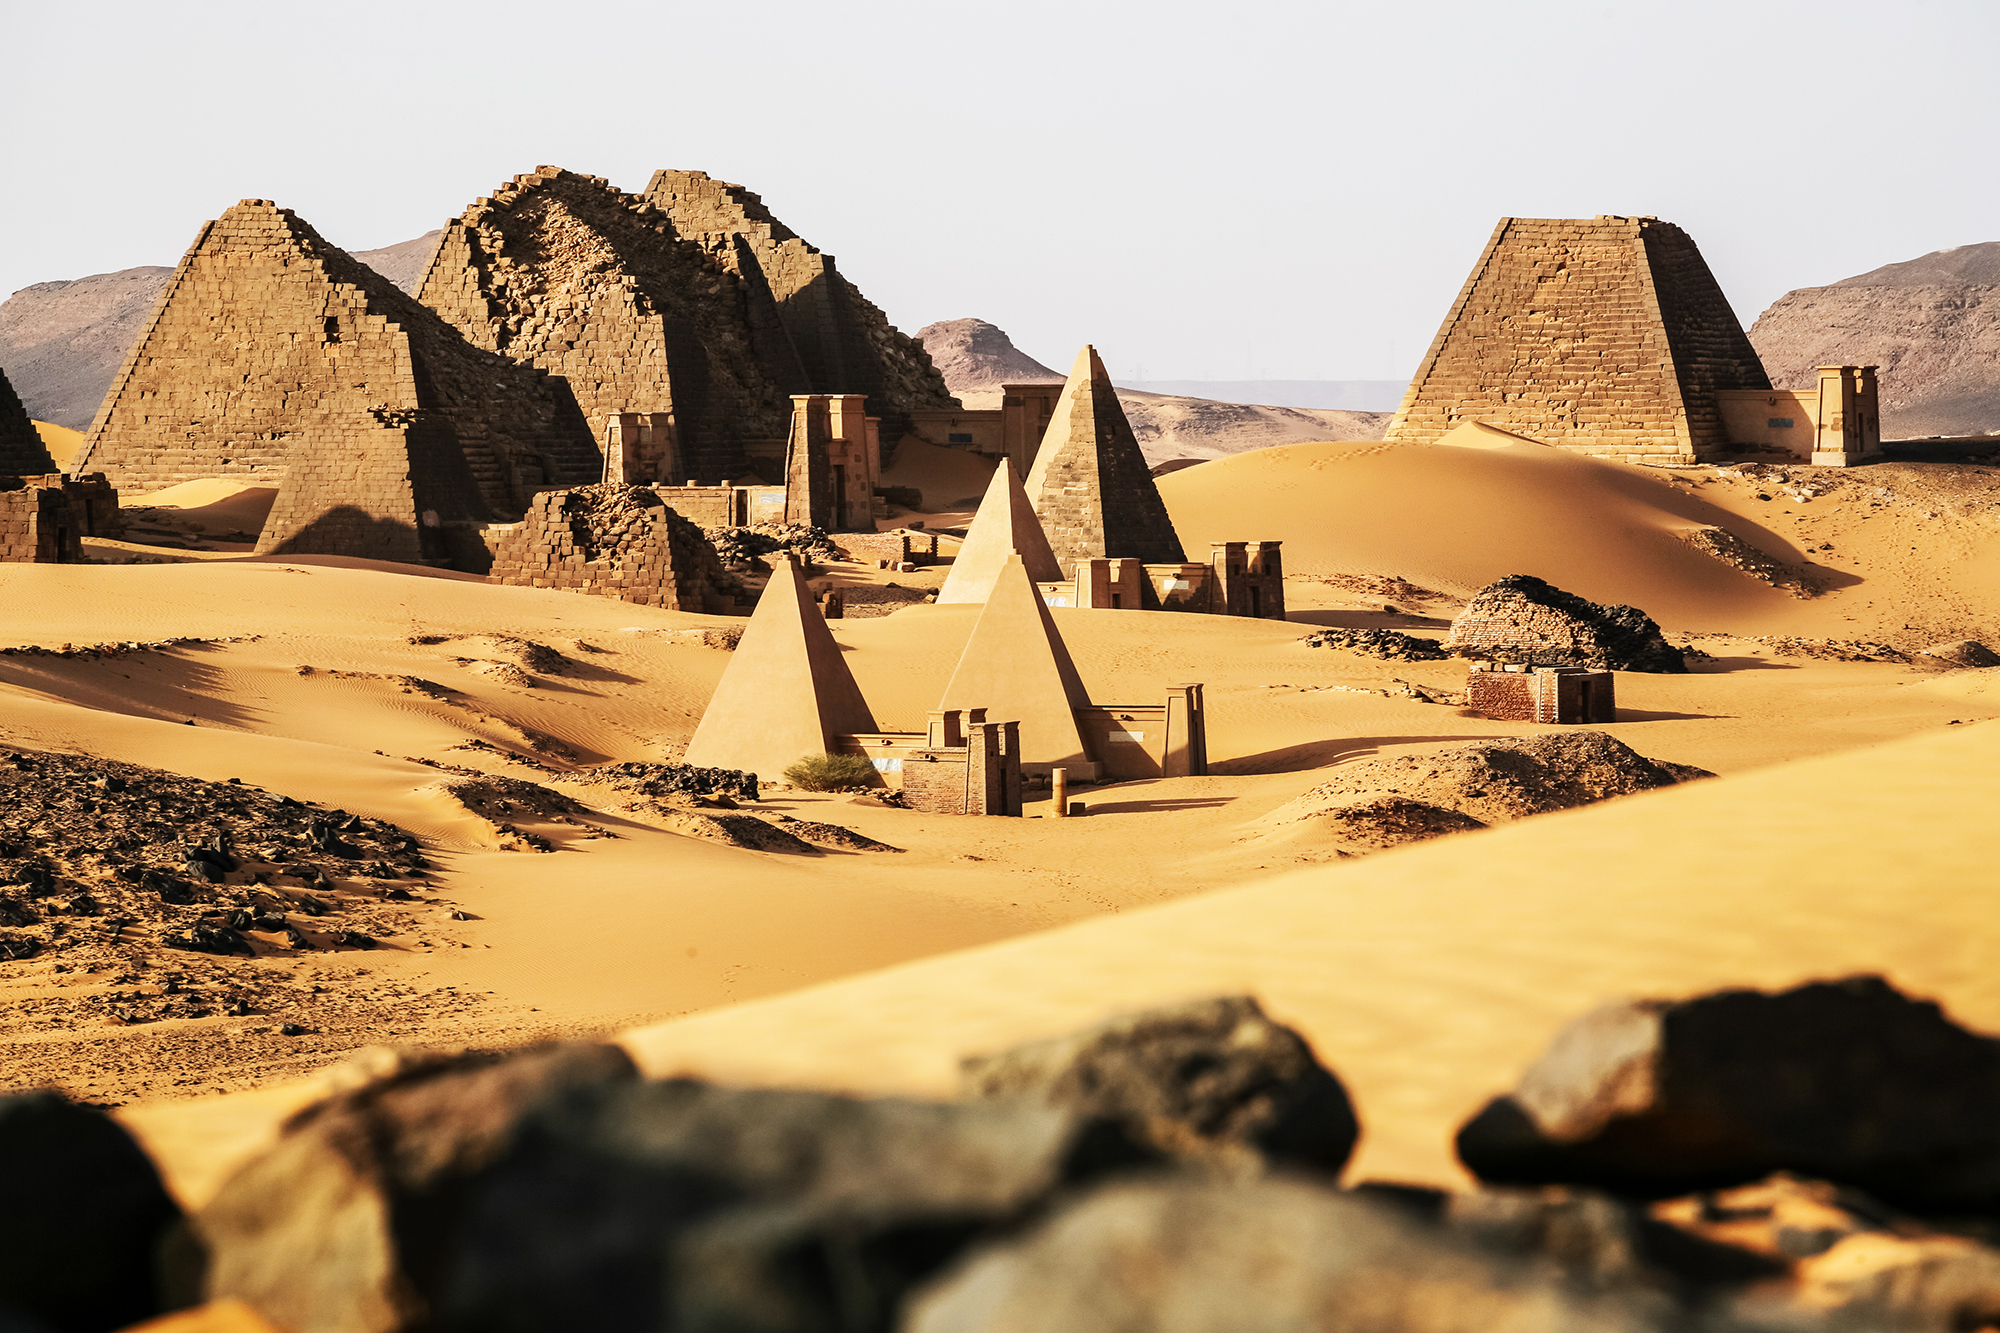 Meroe pyramids in the Sahara desert in Sudan